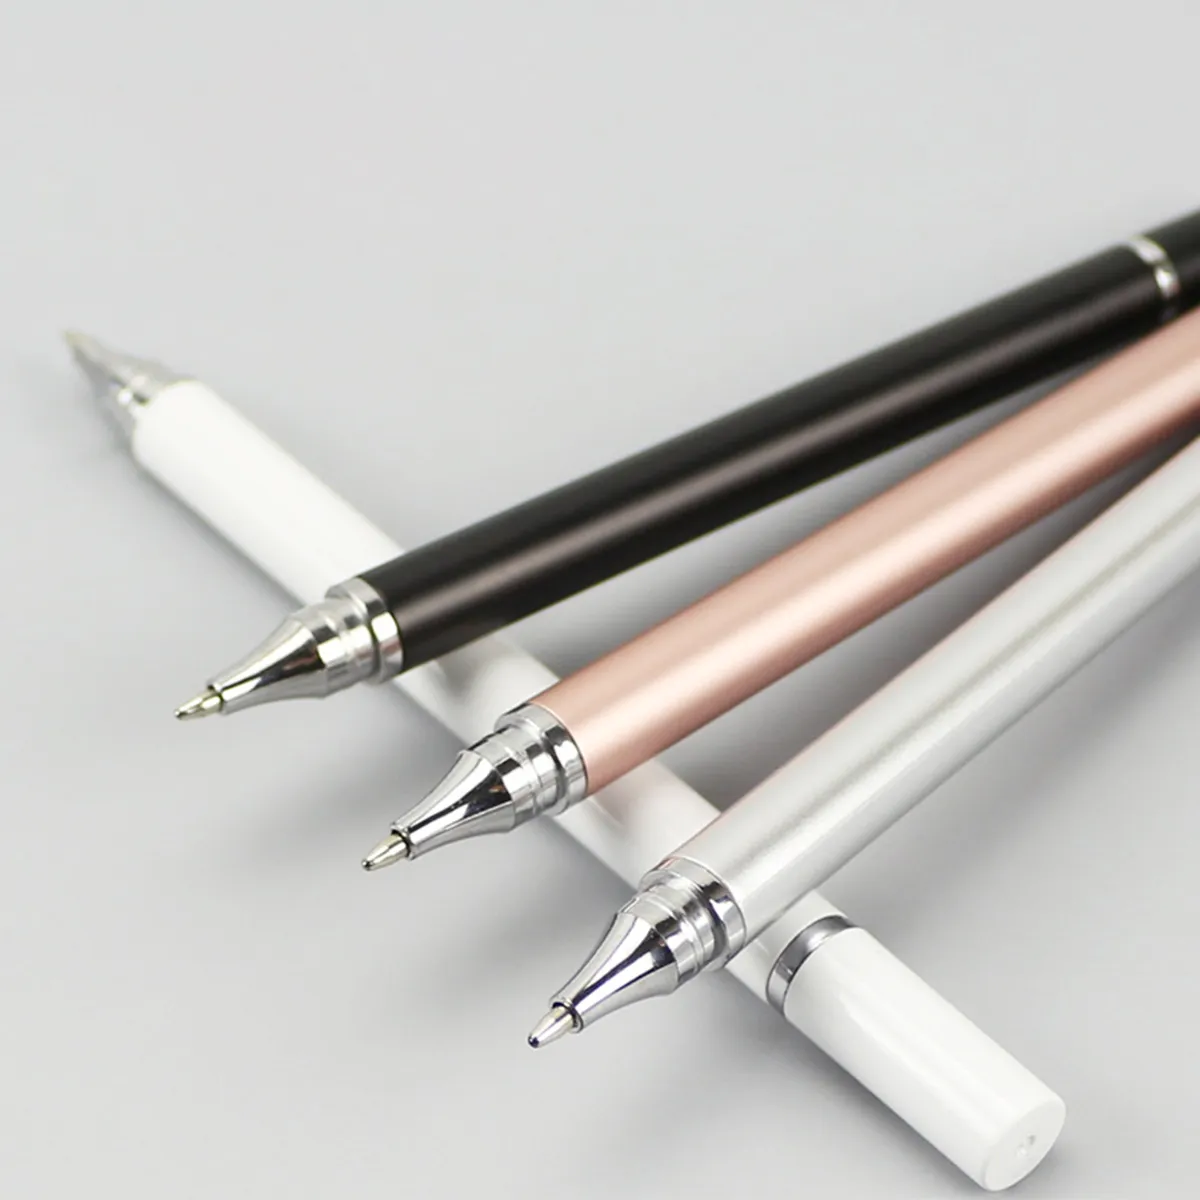 2 في 1 قلم القلم للهواتف الذكية اللوحية رسم القلم السعوسي العالمي الشاشة المحمولة الشاشة اللمسة للهاتف الذكي اللوحي